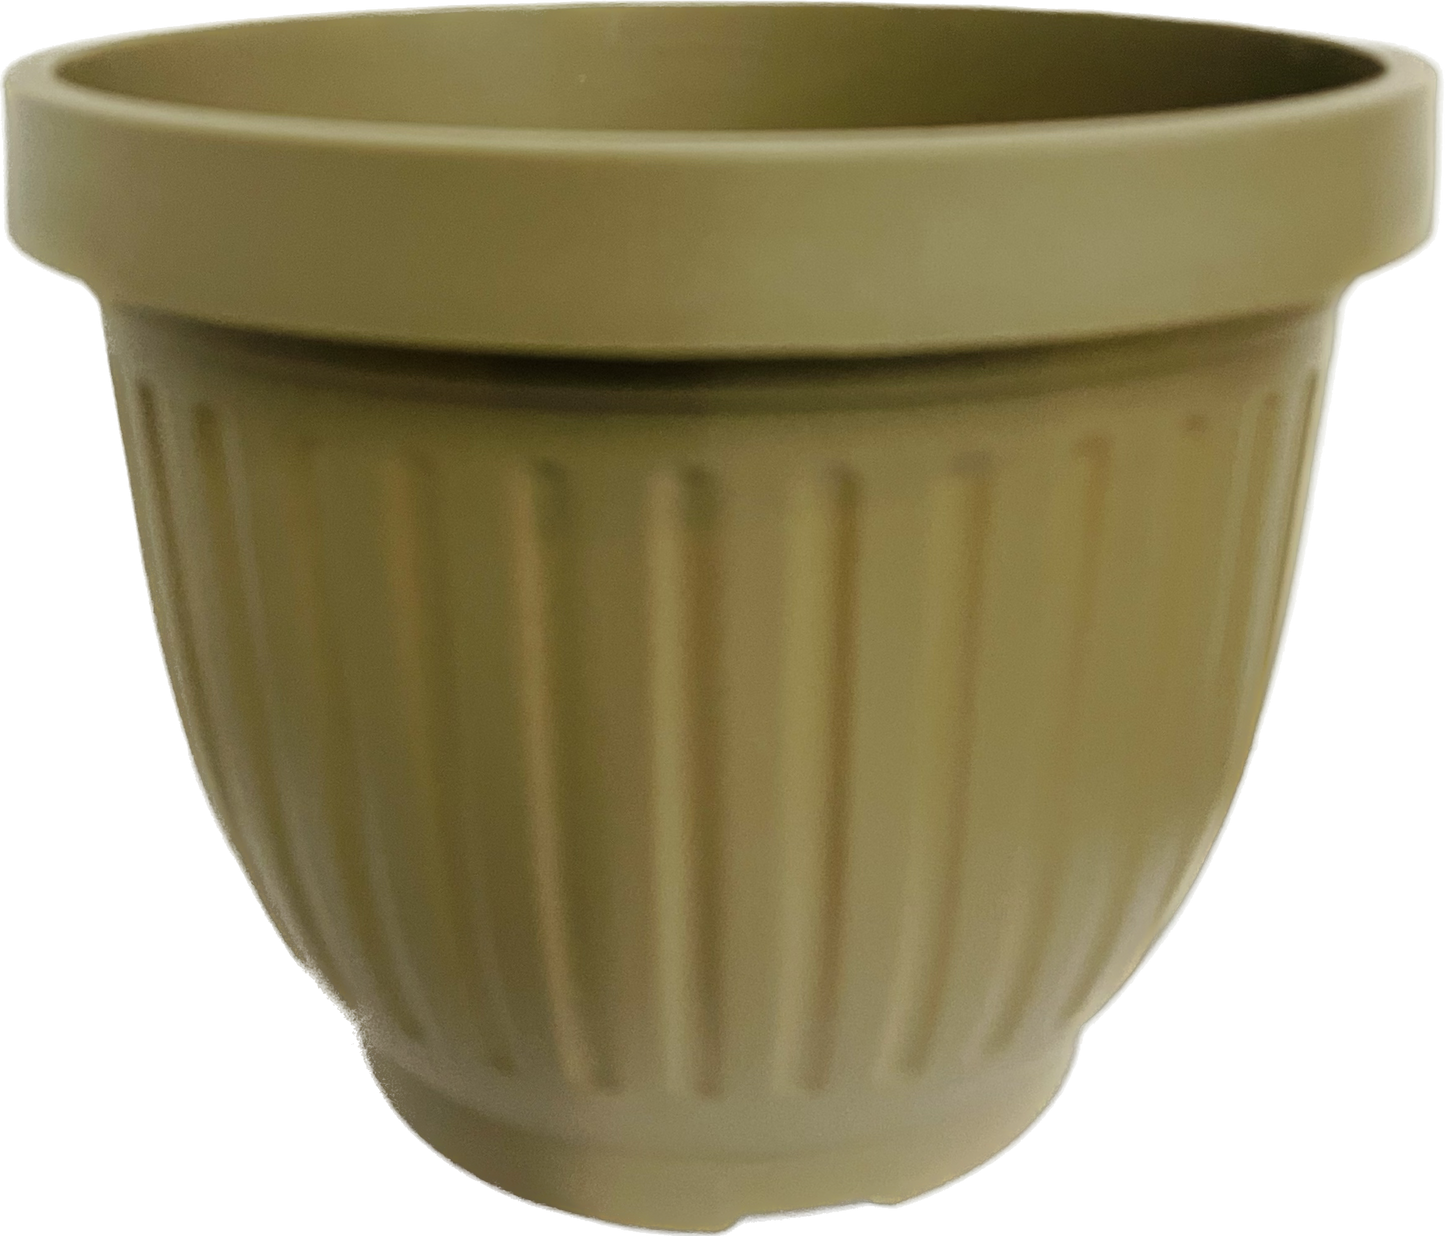 Plastic Decorative Pot 2 Gallon 8 inch